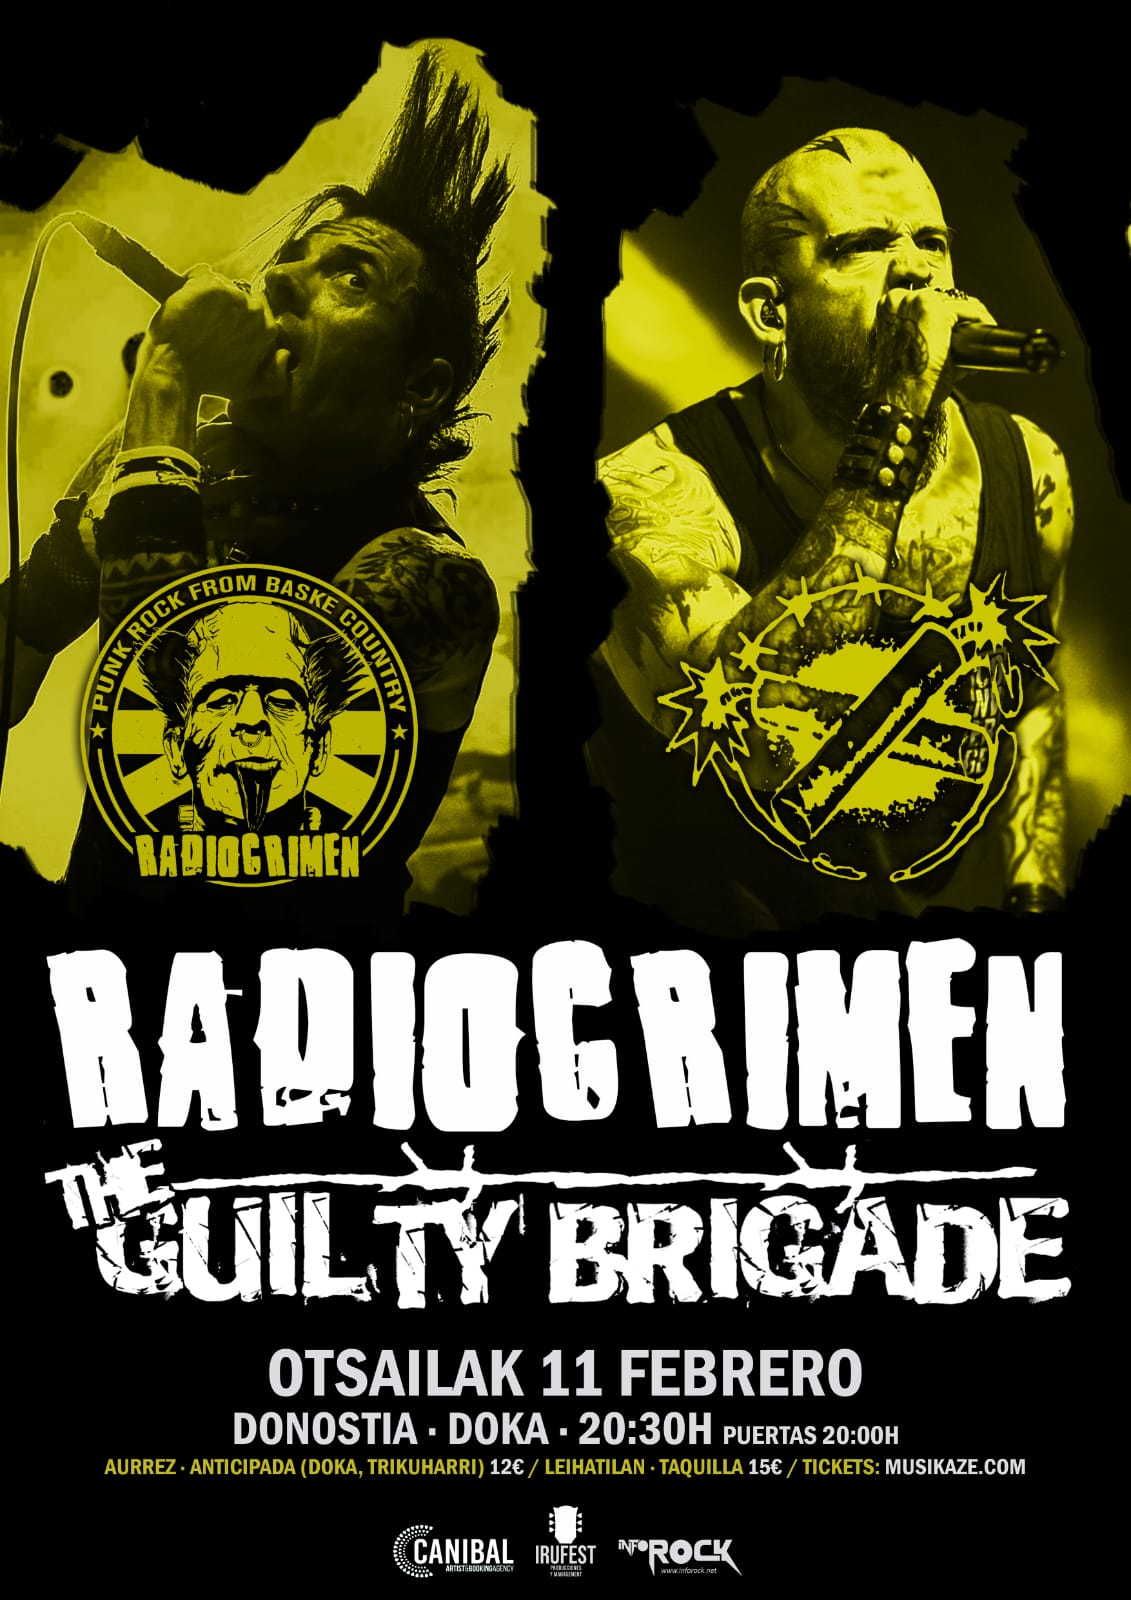 concierto de radiocrimen y the guilty brigade en donostia 16388170881201422